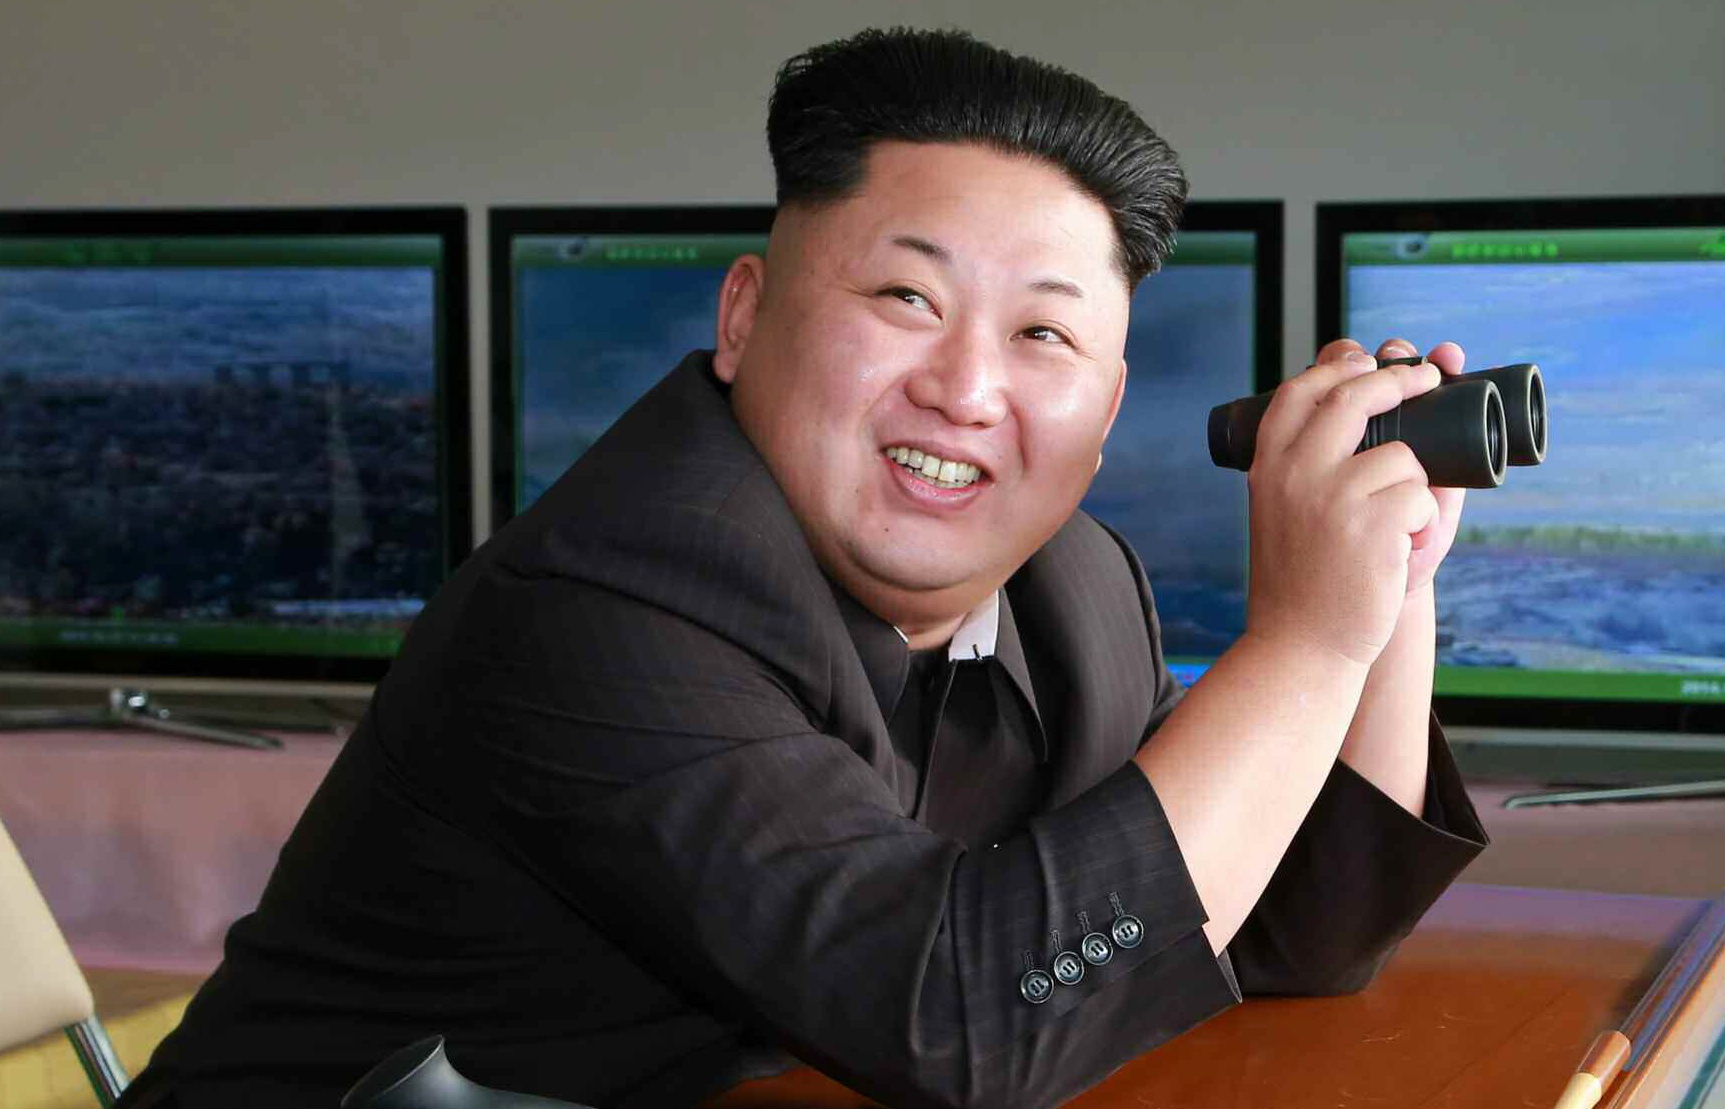 В КНДР открыто угрожают США: в Пхеньяне намерены нарастить ядерный потенциал и нанести удар по Вашингтону